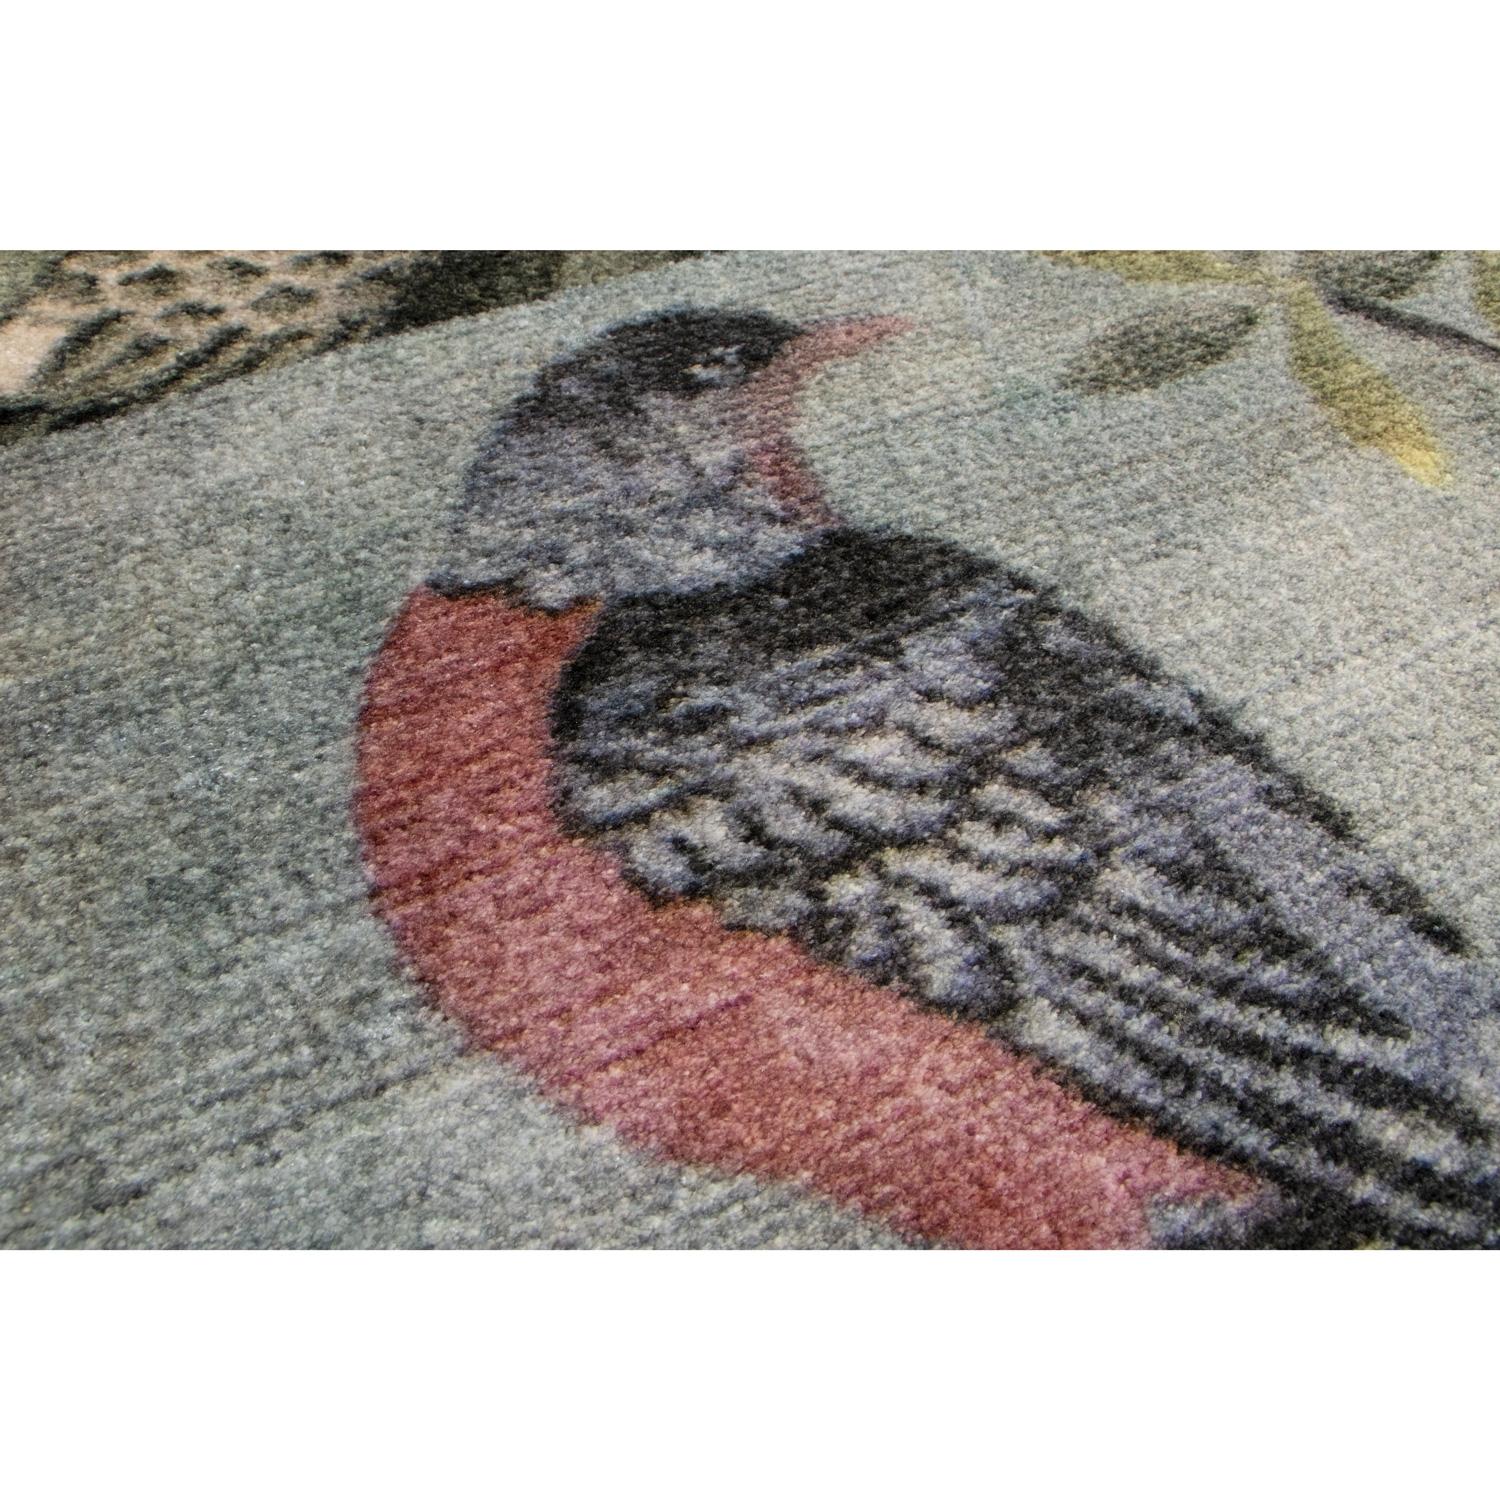 japanese inspired rugs